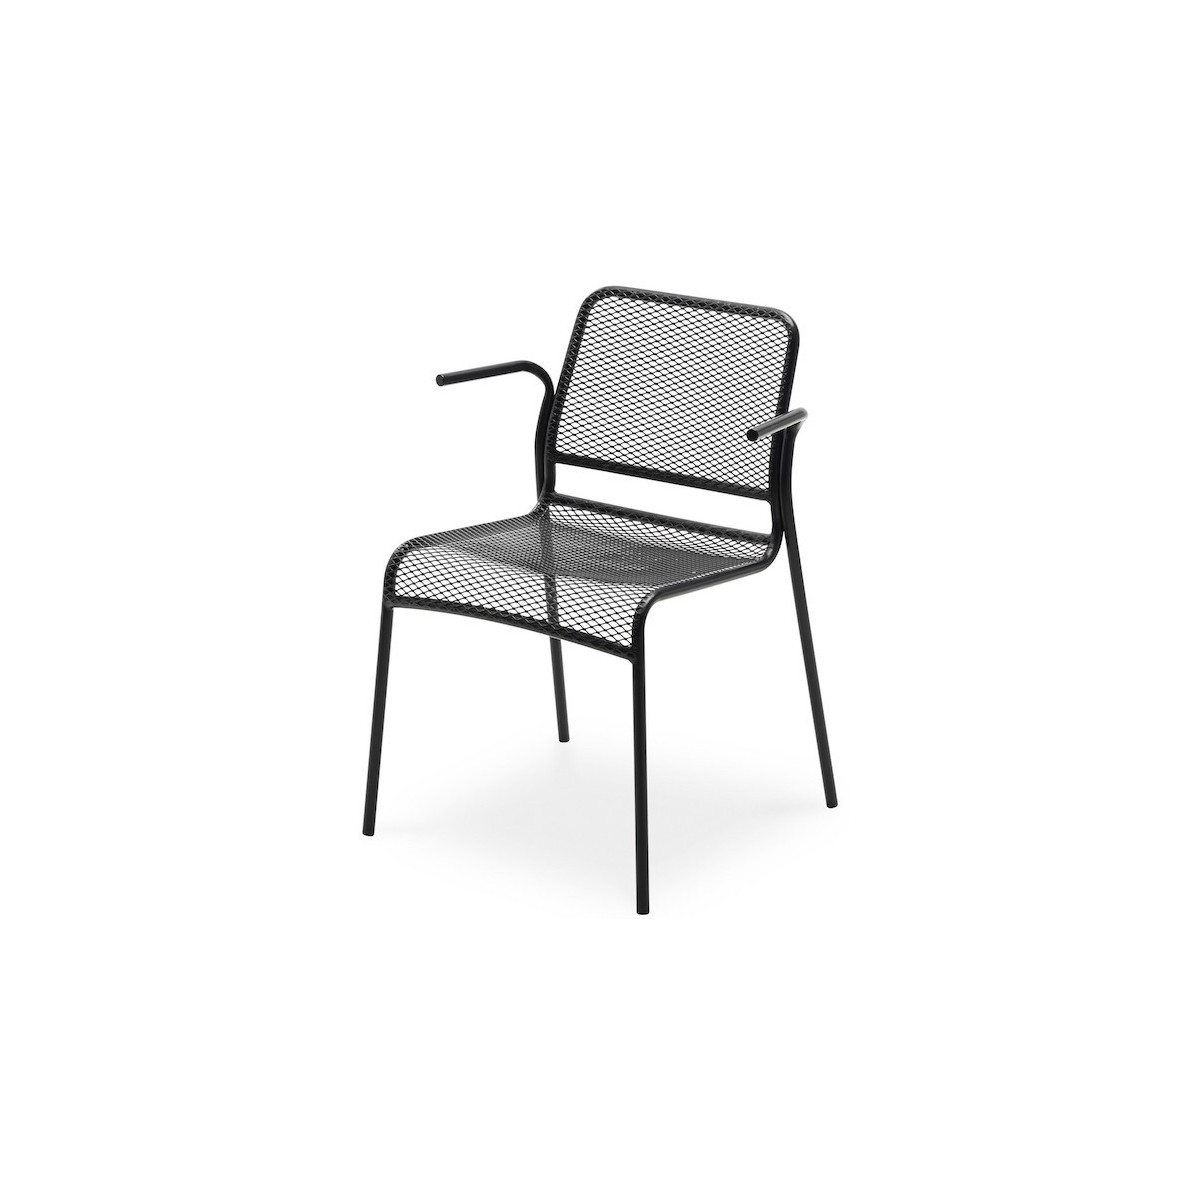 ÉPUISÉ noir anthracite - fauteuil Mira